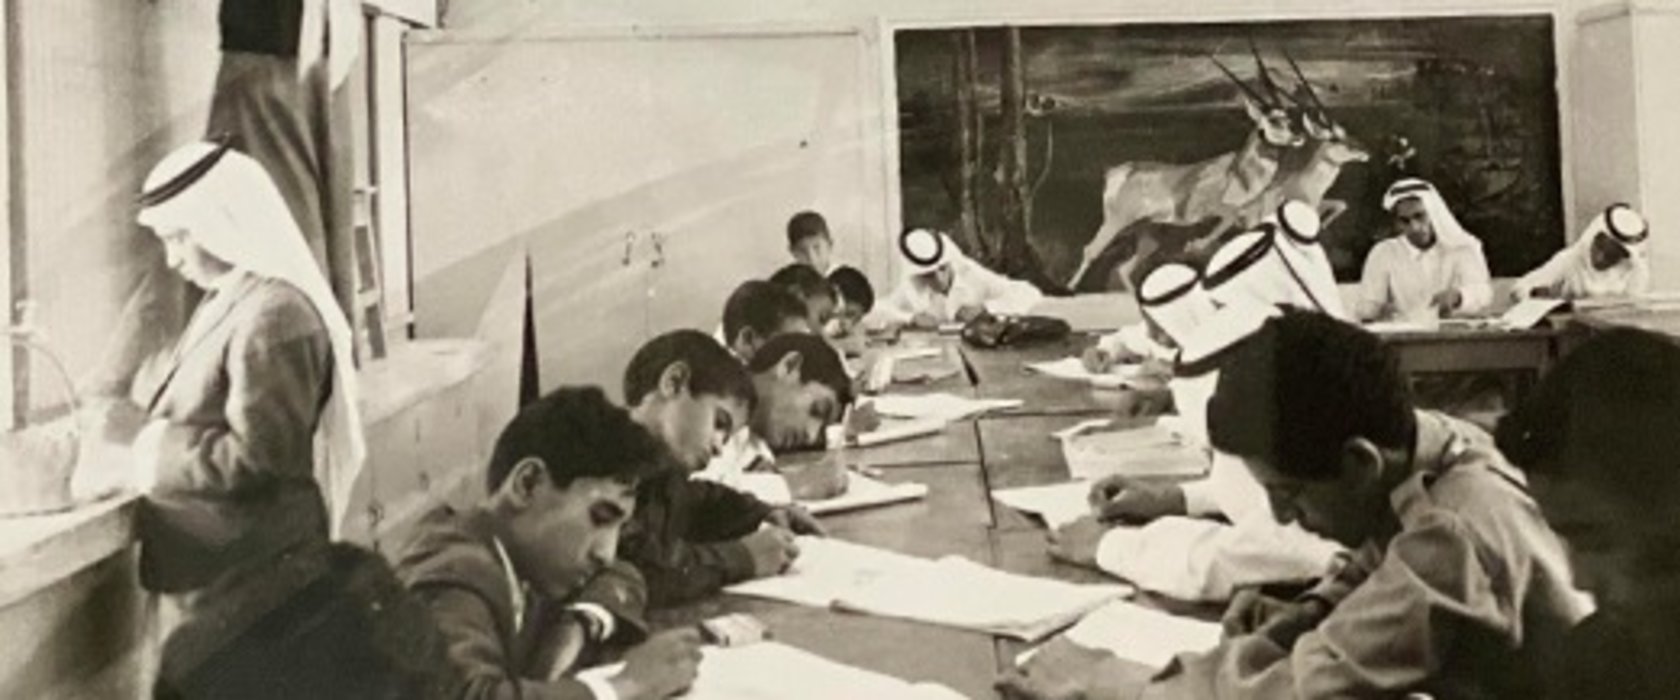 رو اد التعليم في دولة قطر إضاءات على محطات تعليمية خلال الفترة من 1890 إلى 1957 مؤسسة قطر